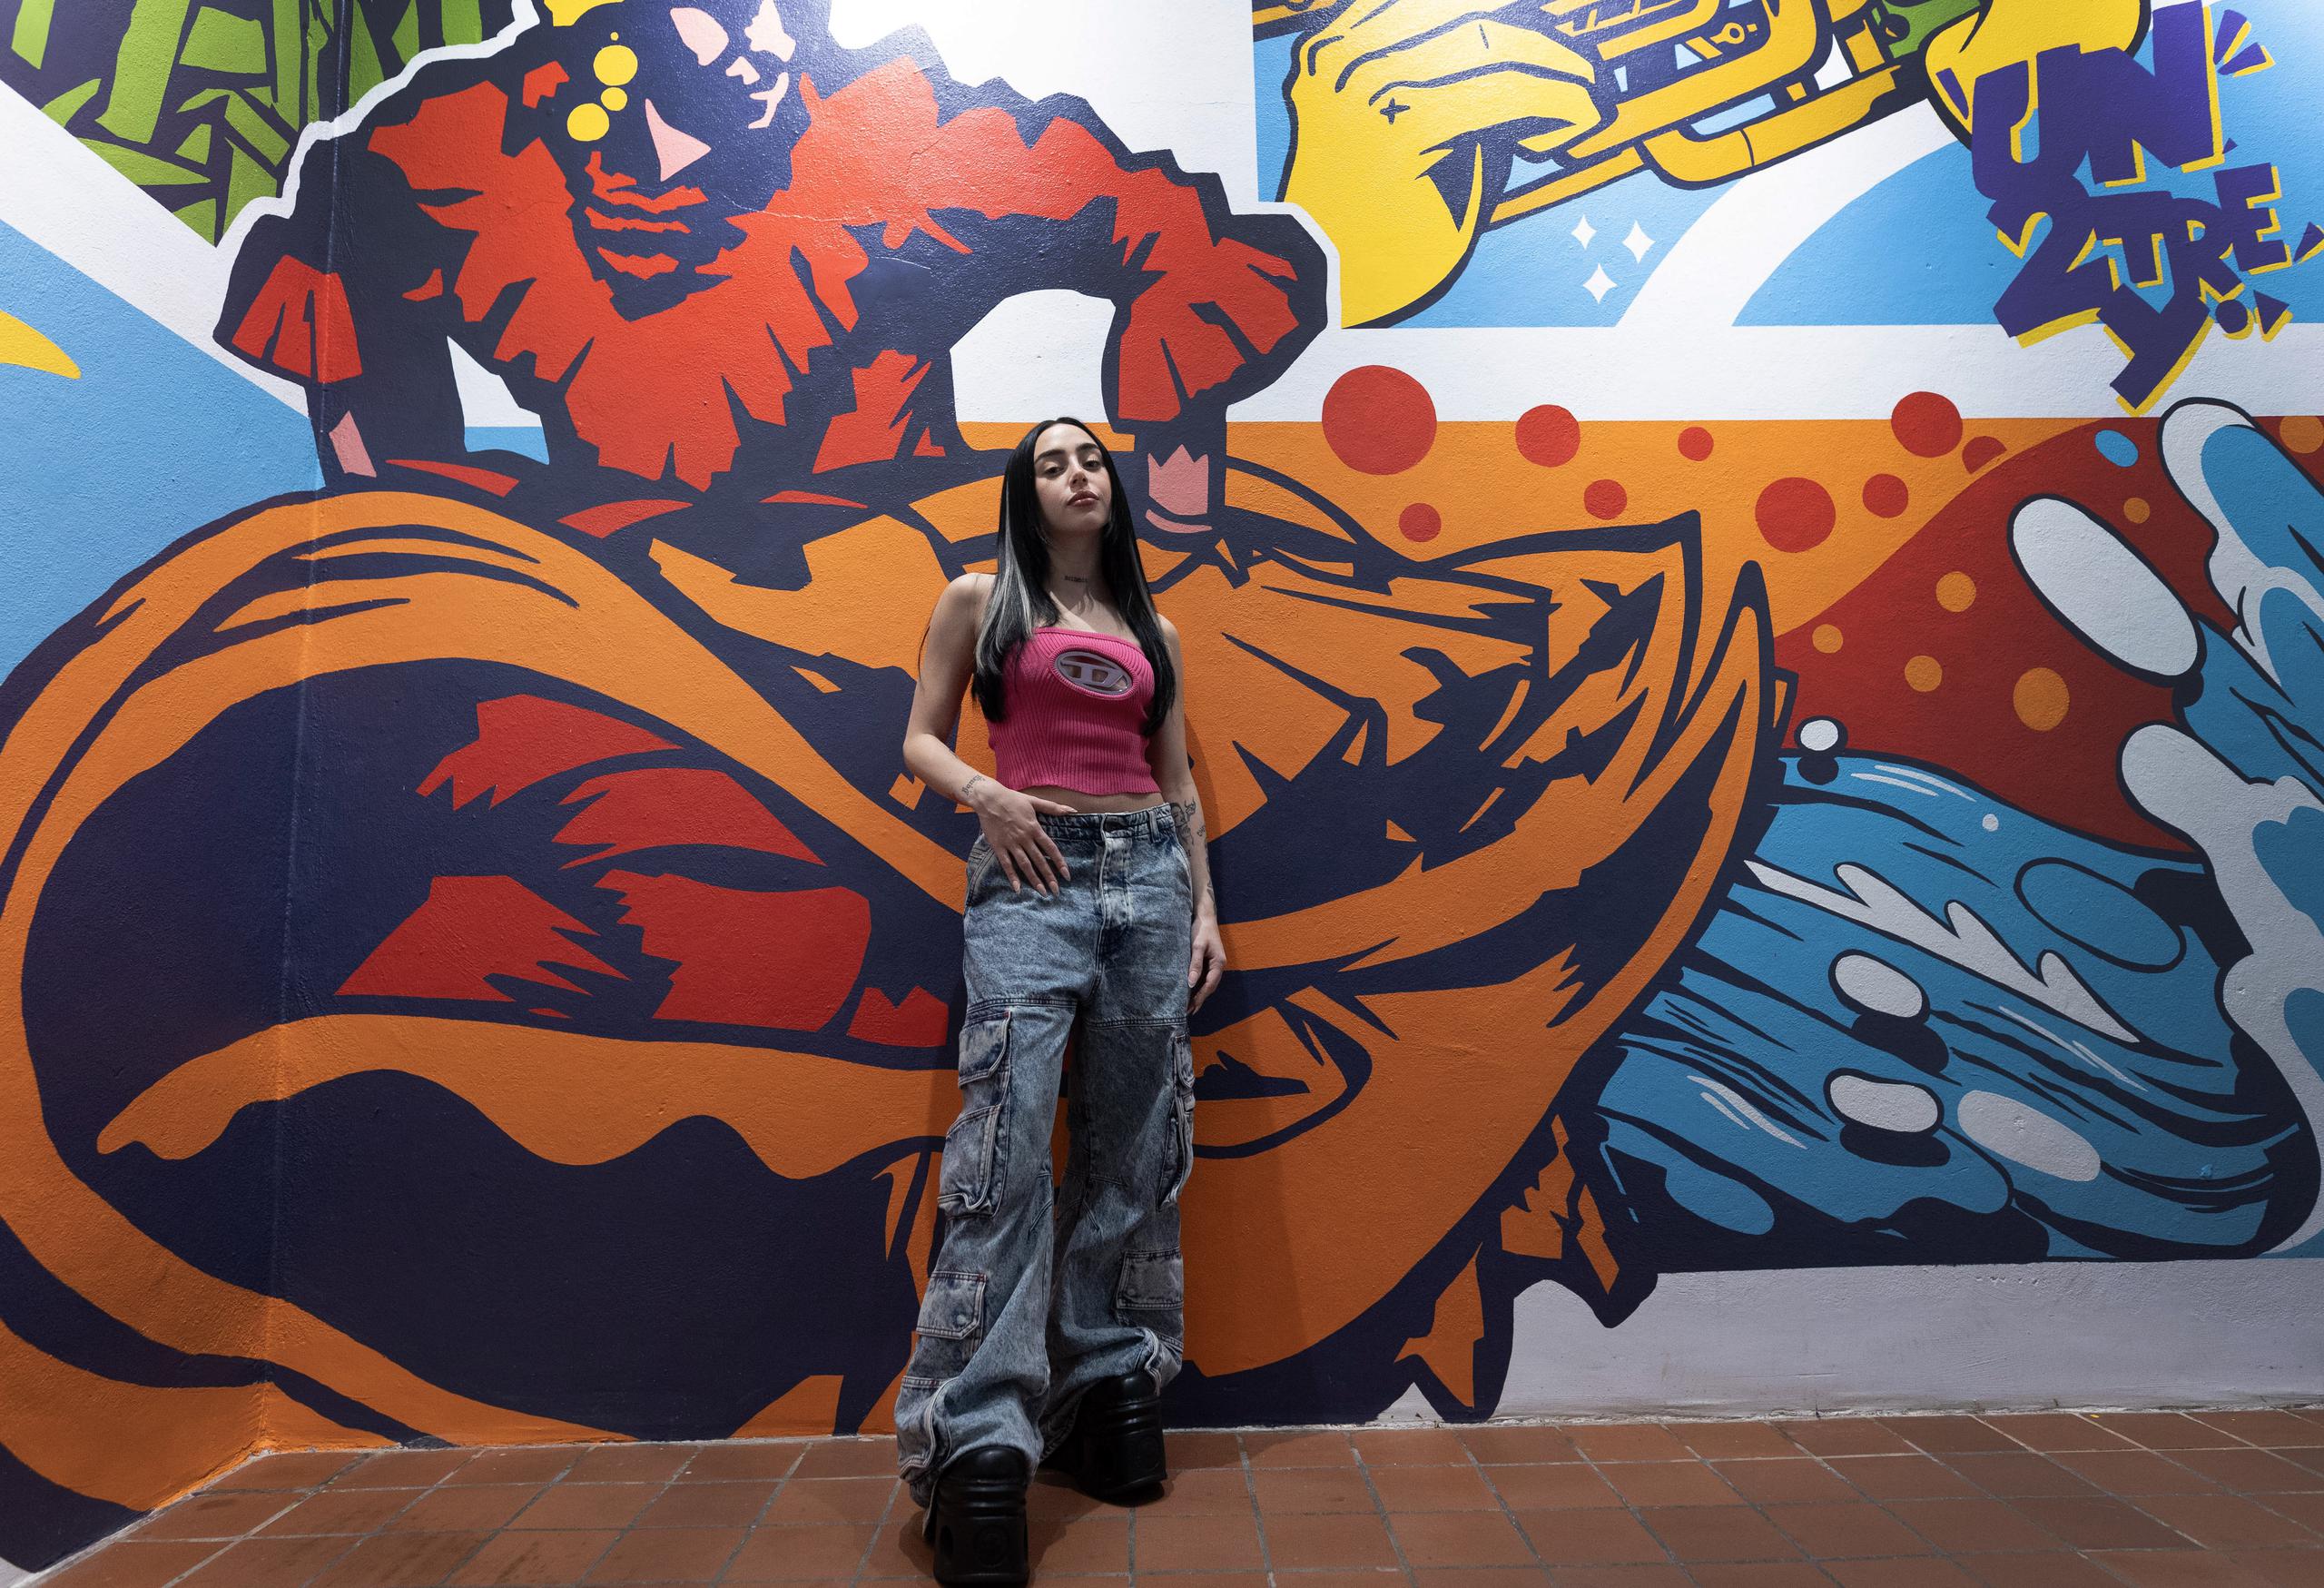 La artista se encontraba en Puerto Rico promoviendo su más reciente álbum, "Alma".
